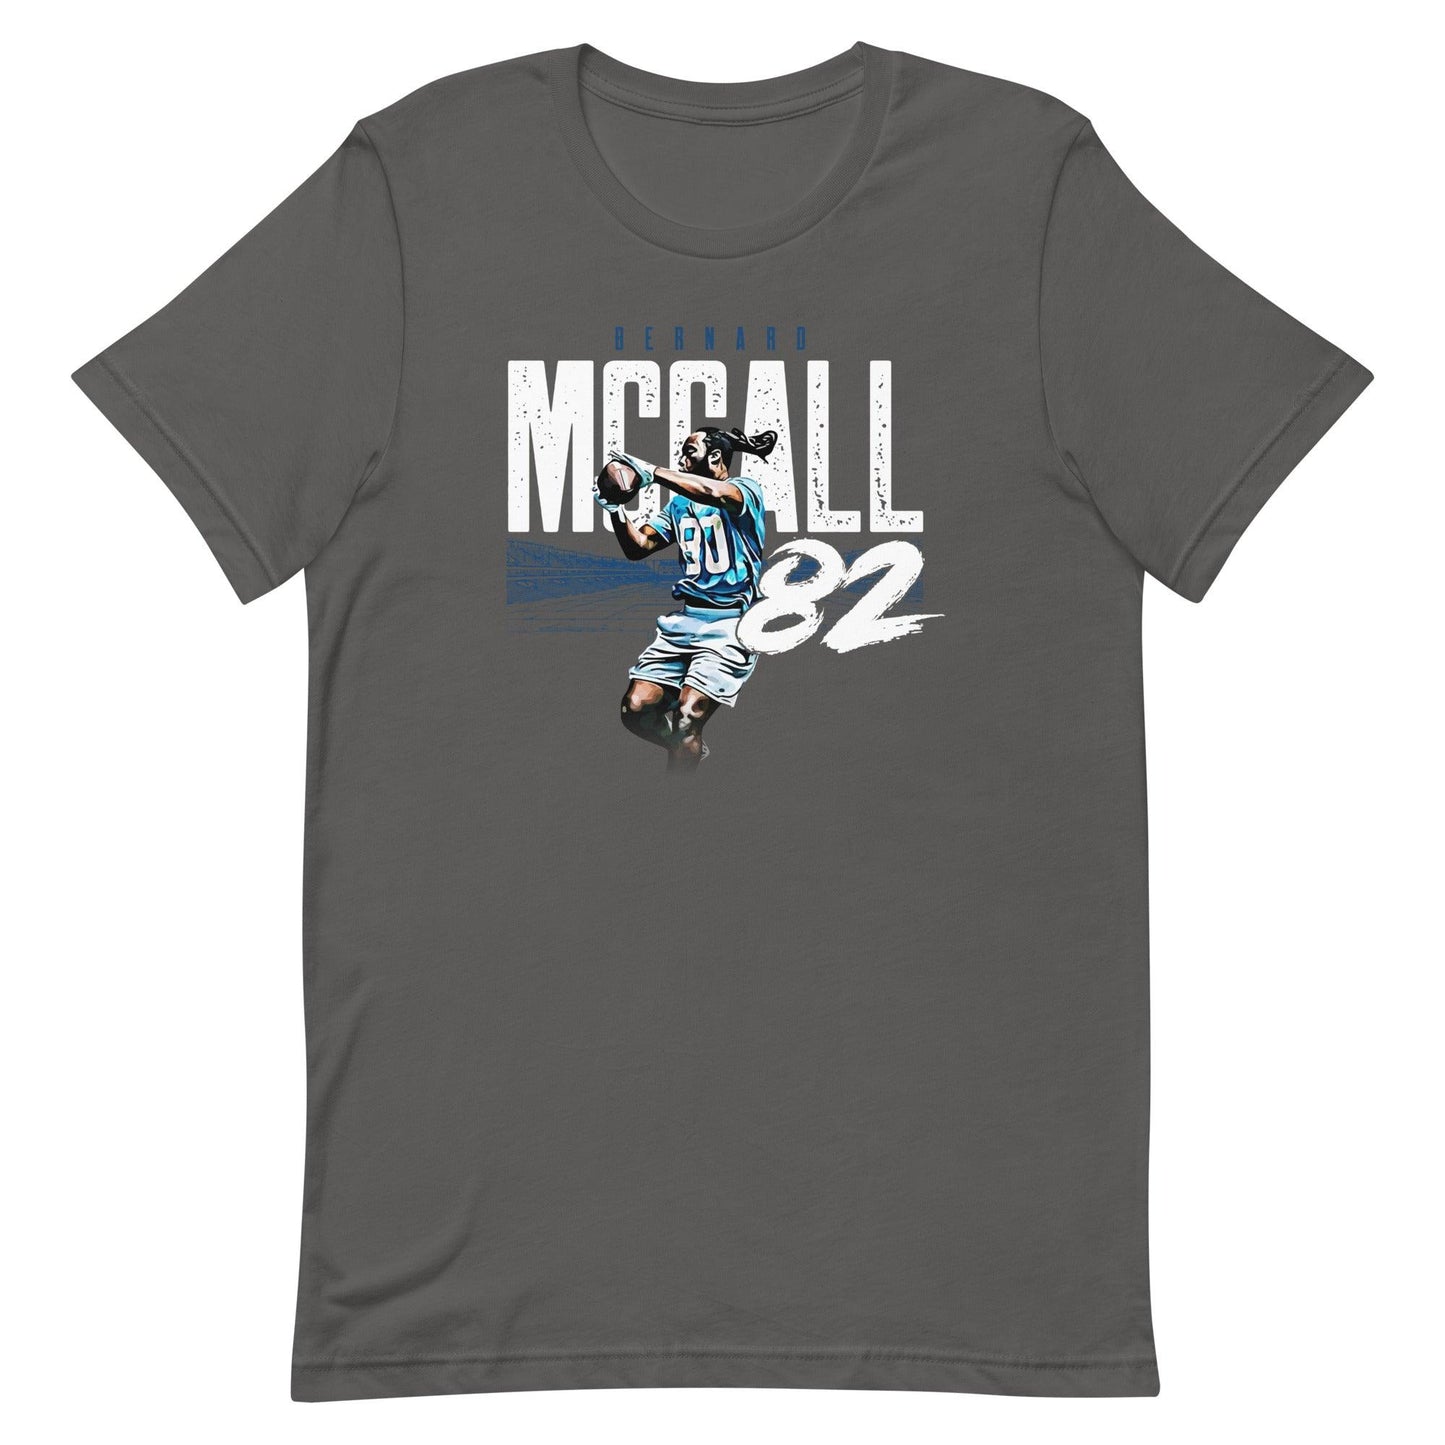 Bernard McCall "New Beginnings" t-shirt - Fan Arch